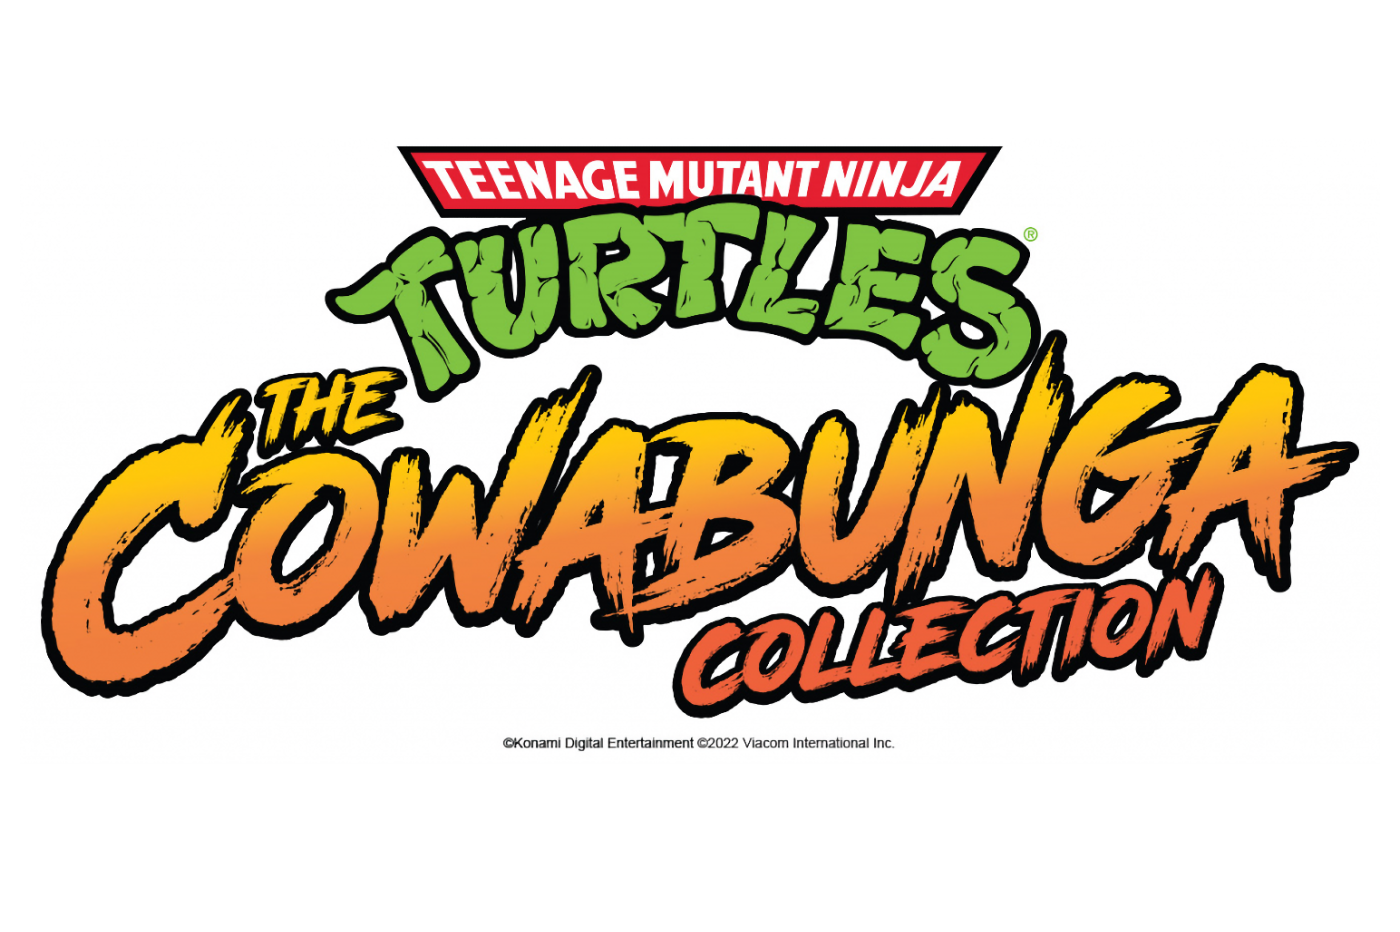 Cowabunga!  Konami presents all the Teenage Mutant Ninja Turtles games